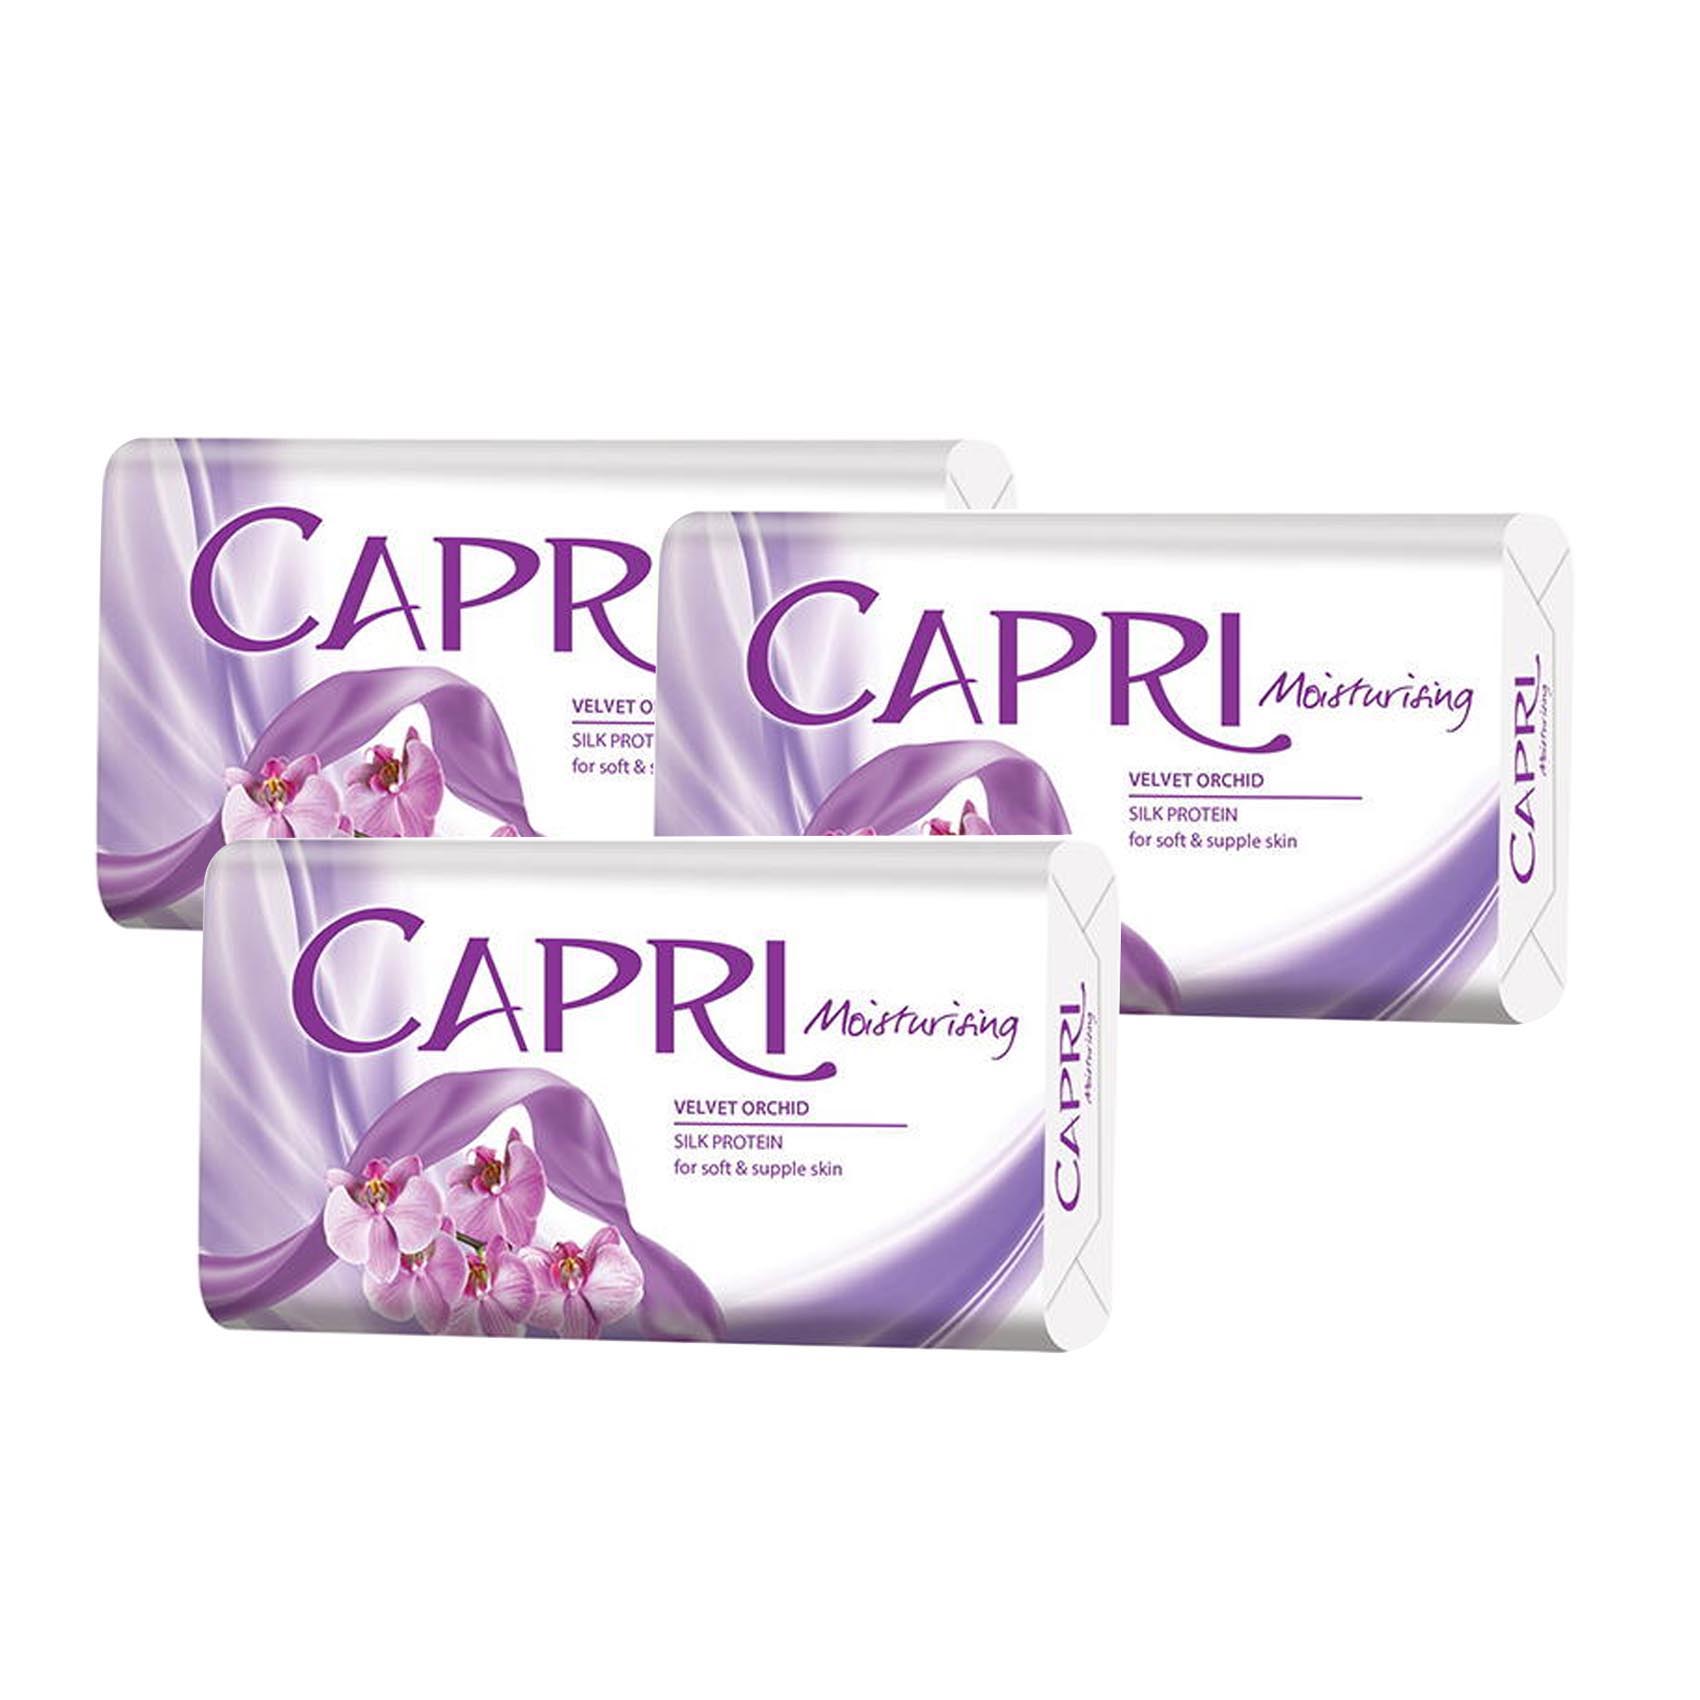 Capri Moisturising Velvet Orchid Skin Protein Soap 150 gr (Pack of 3)